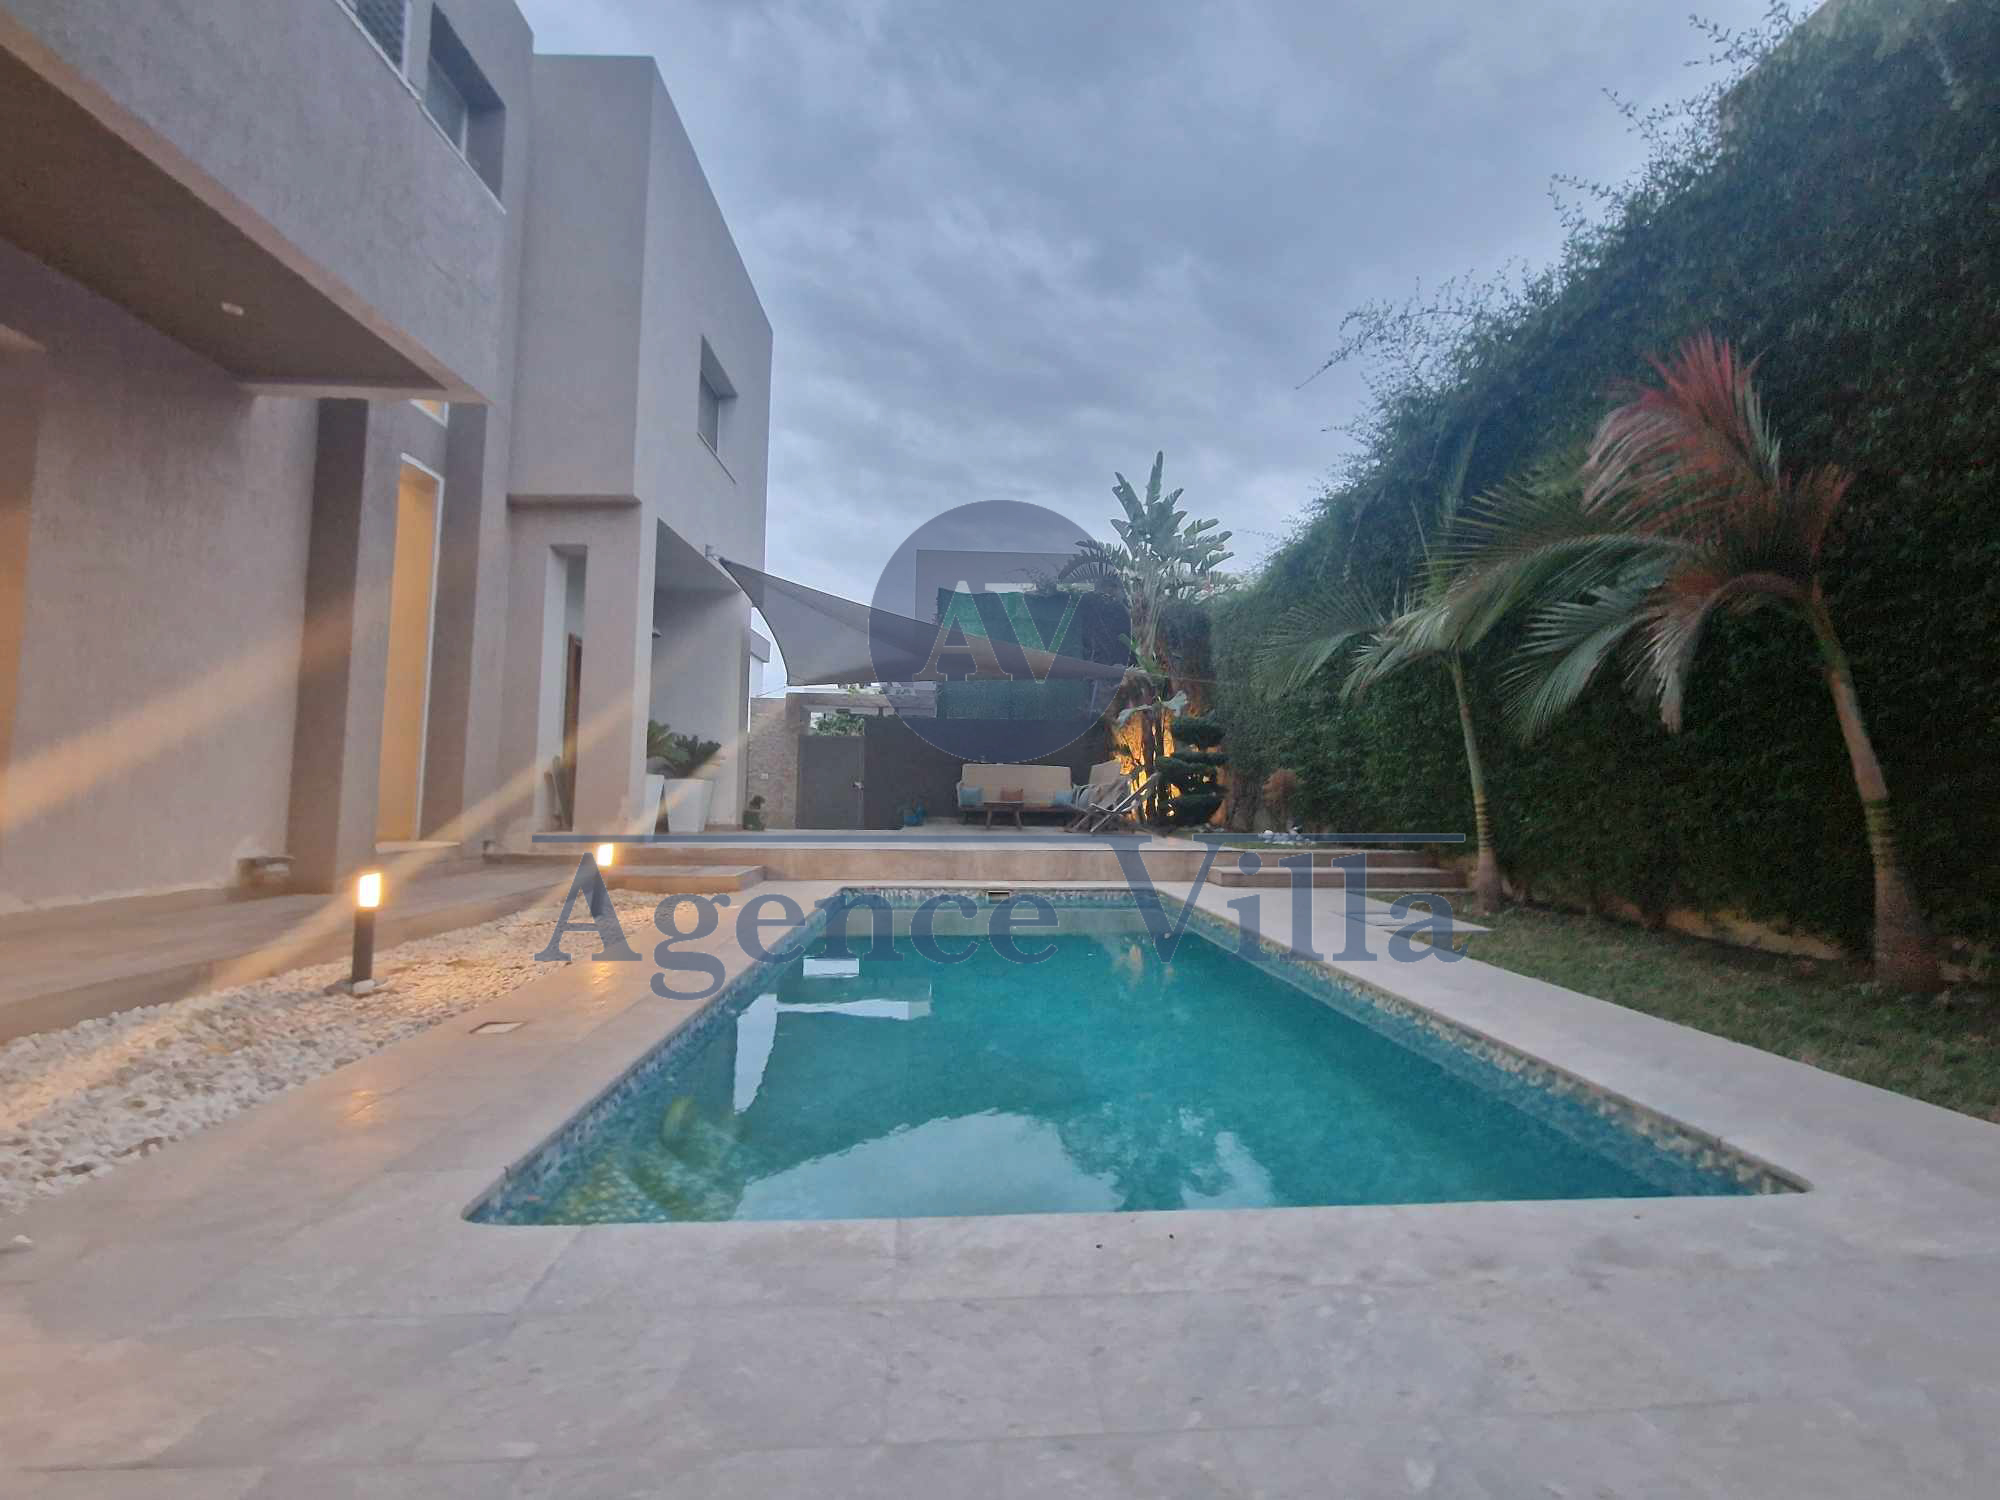 La Soukra La Soukra Location Maisons Villa vide ou meubl a la soukra avec piscine